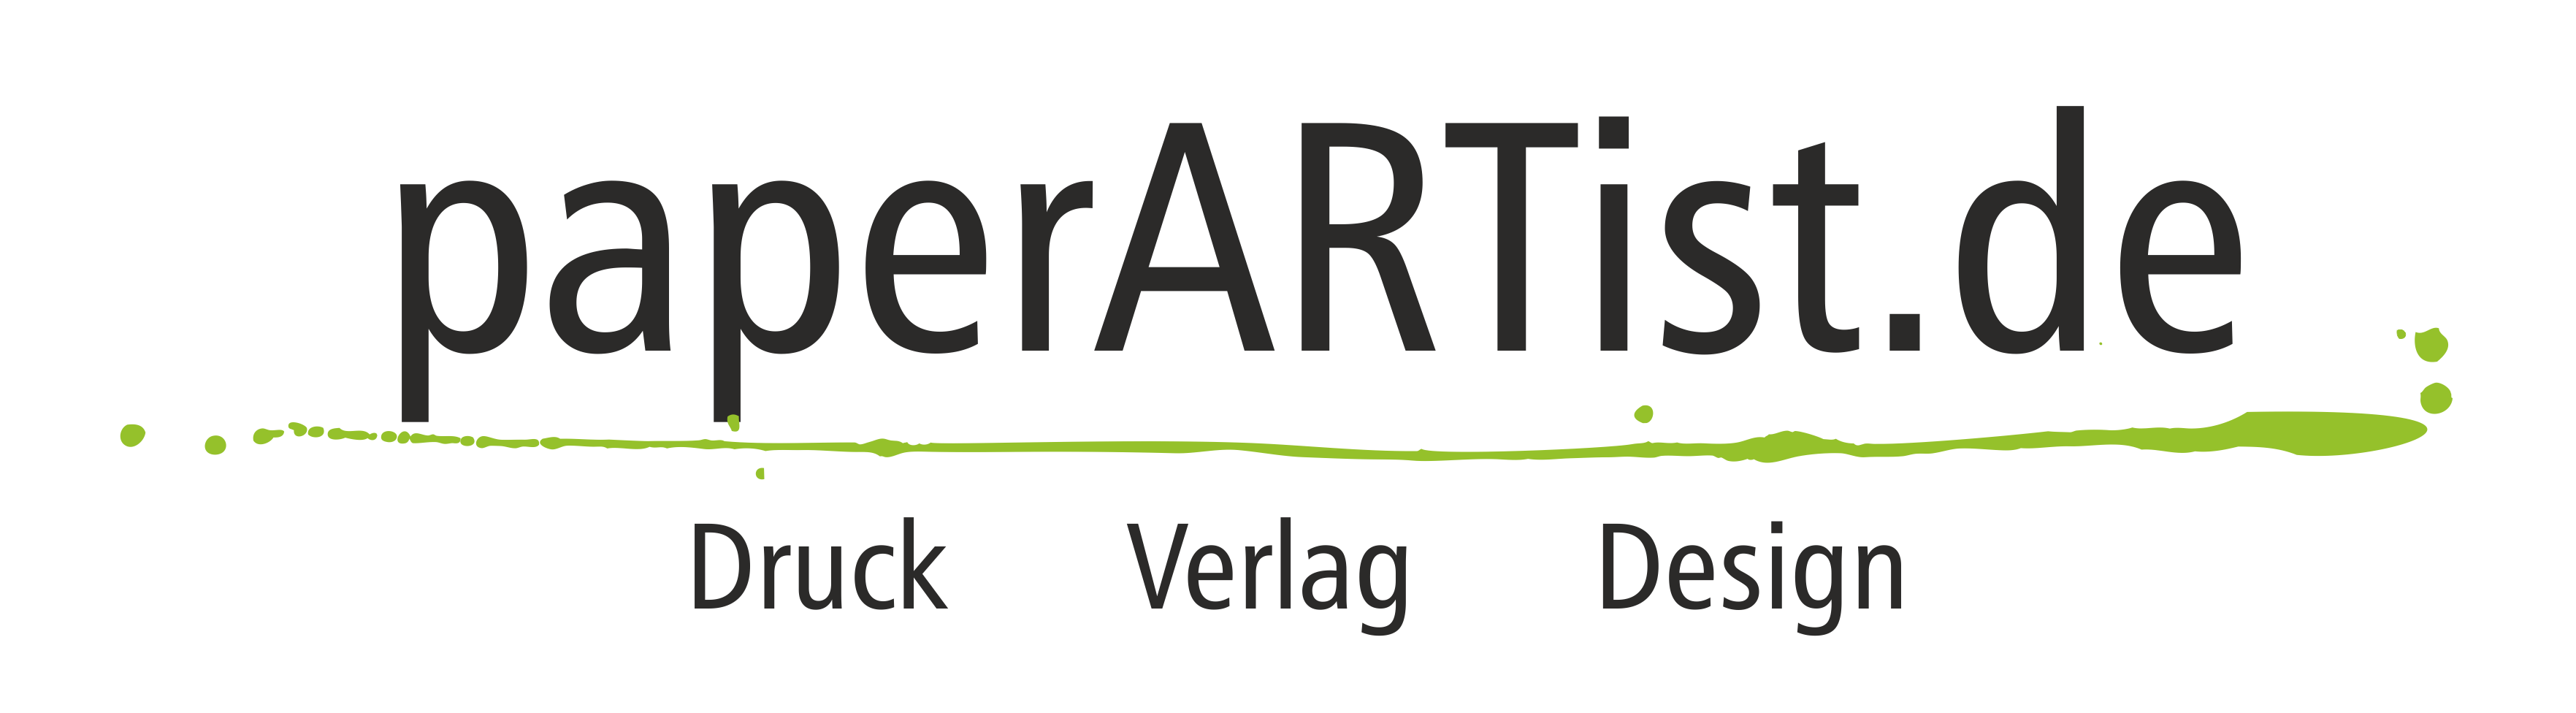 paperARTist.de Etiketten - Druck - Verlag - Design